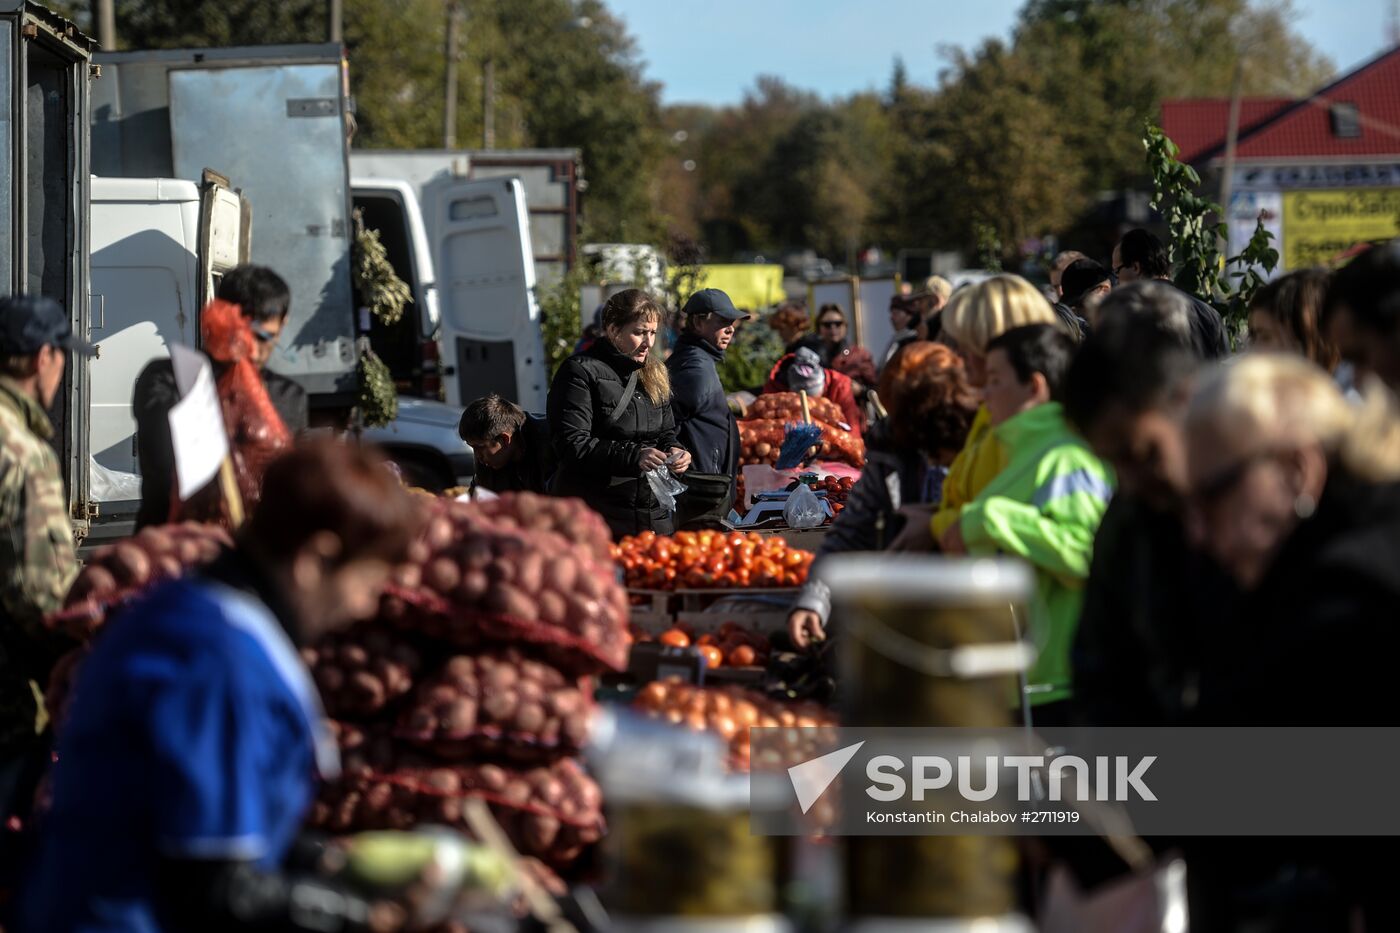 Agricultural fair in Veliky Novgorod